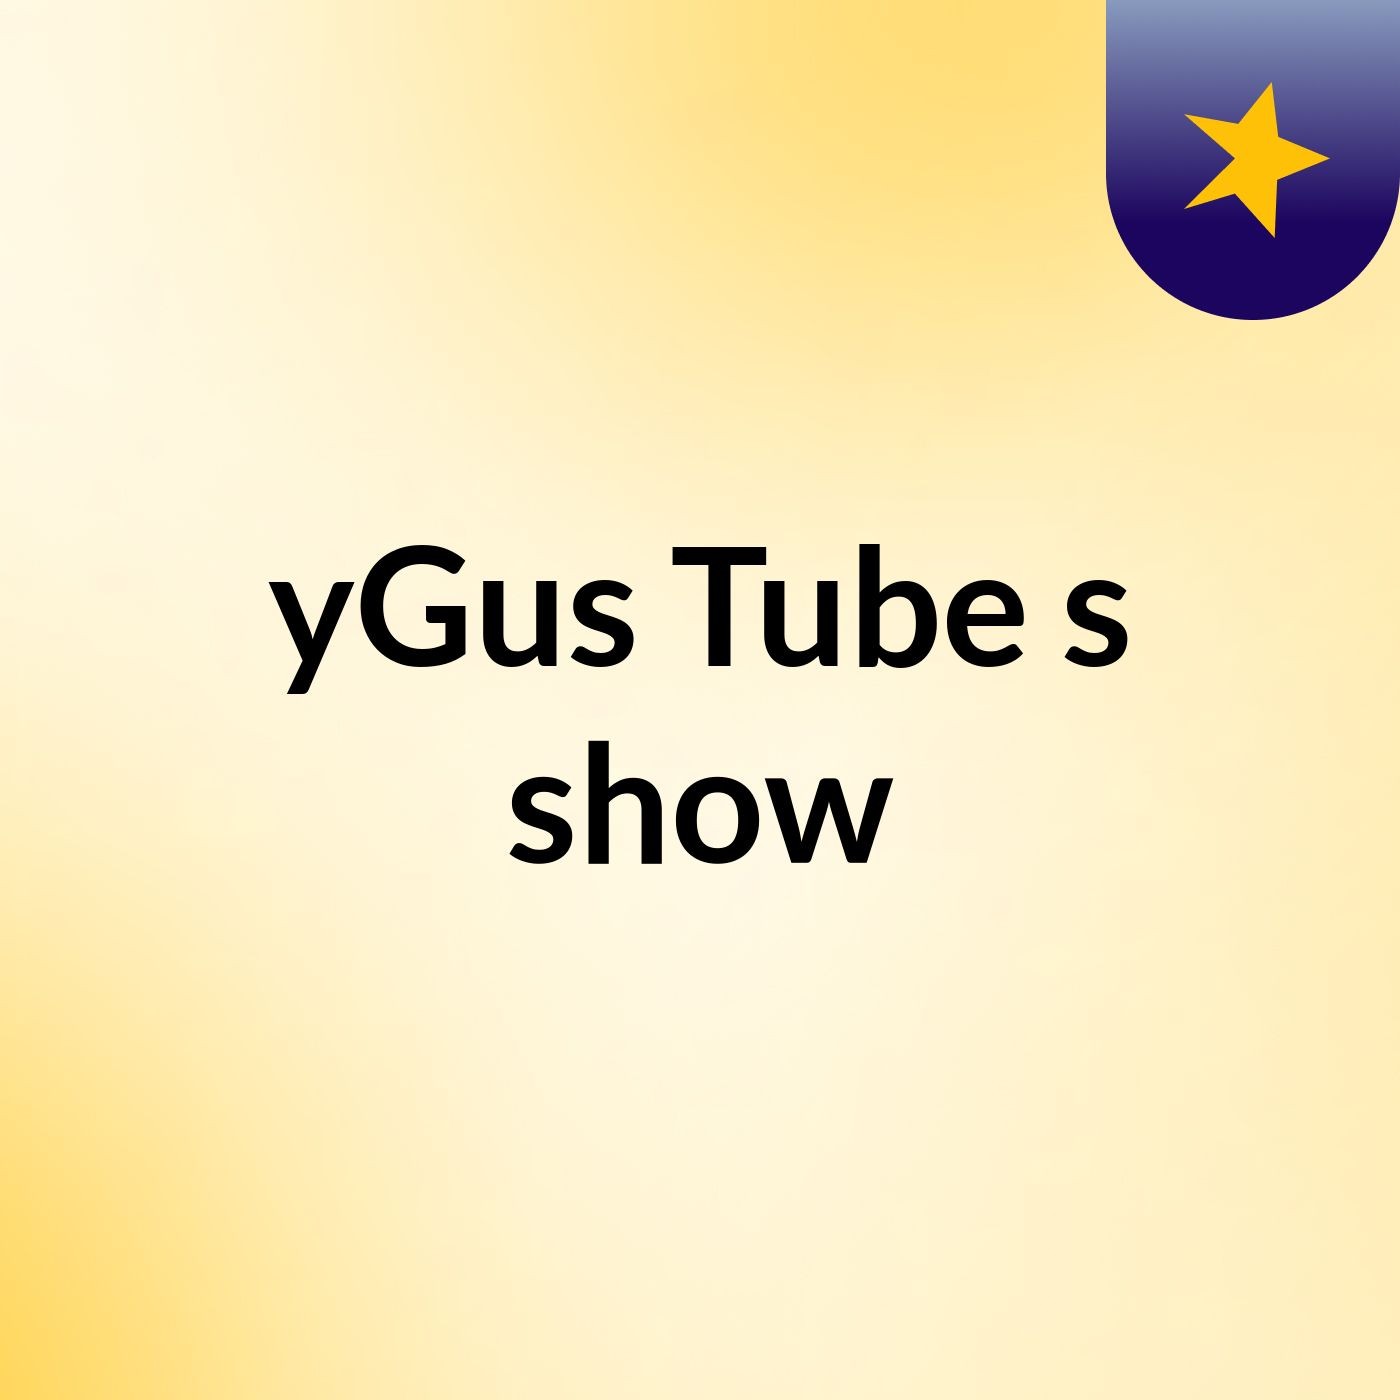 yGus Tube's show